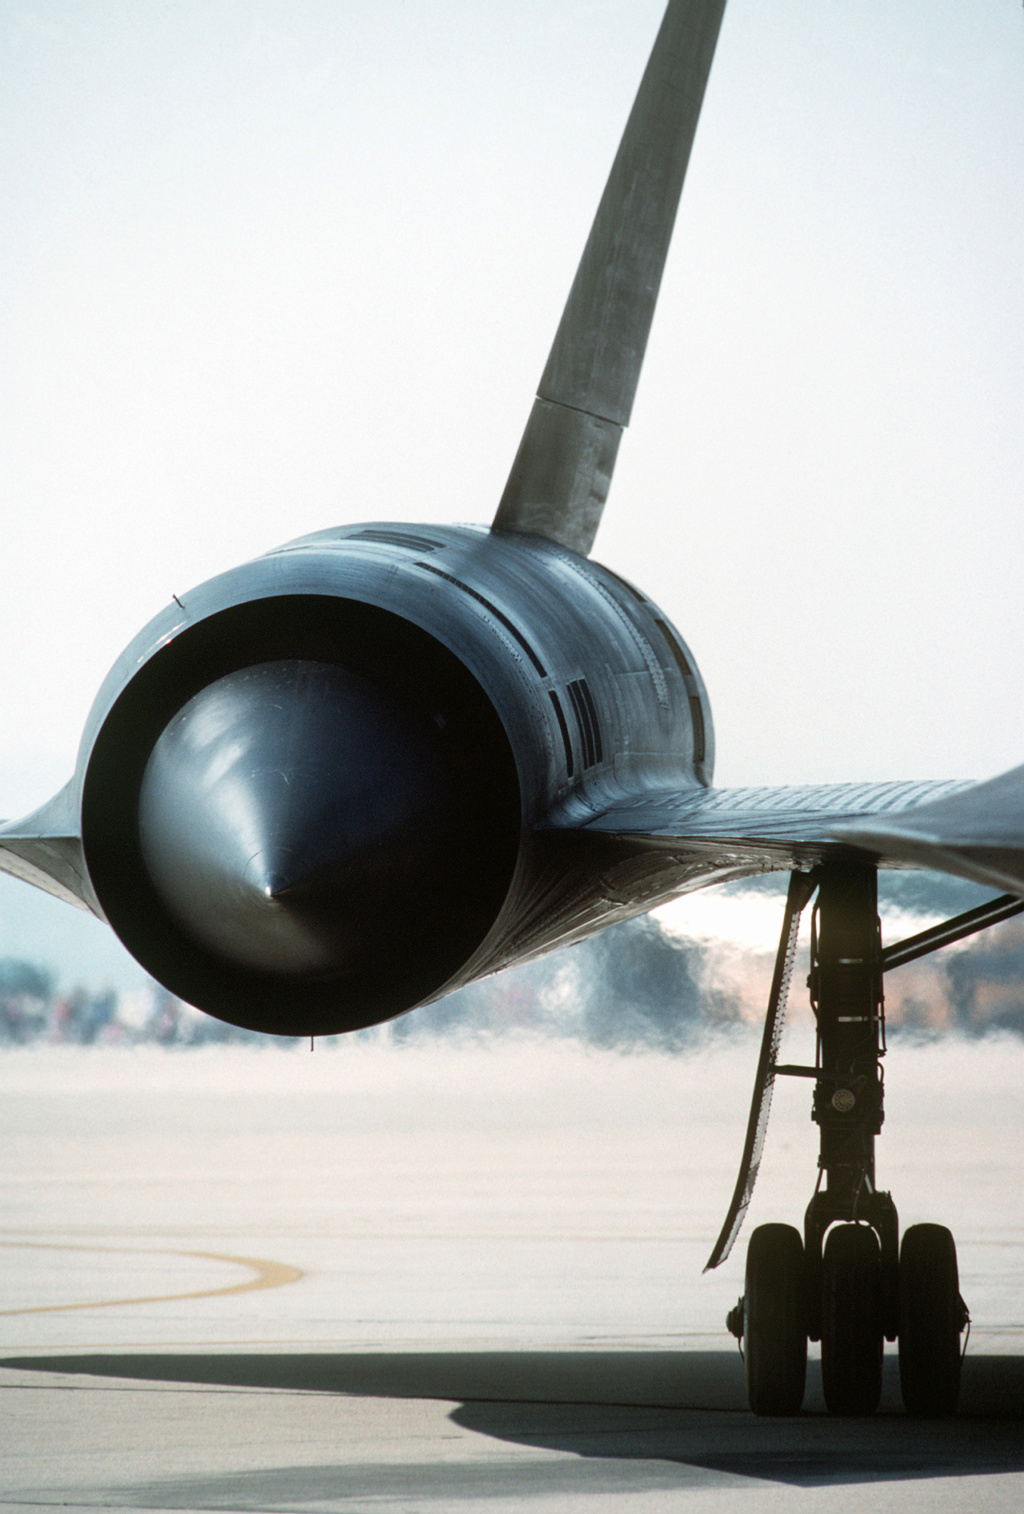 (GB JICEHEM) [Tamiya (Italeri)] Lockheed SR-71 Blackbird -1/48 - Page 2 Gd1_1_10